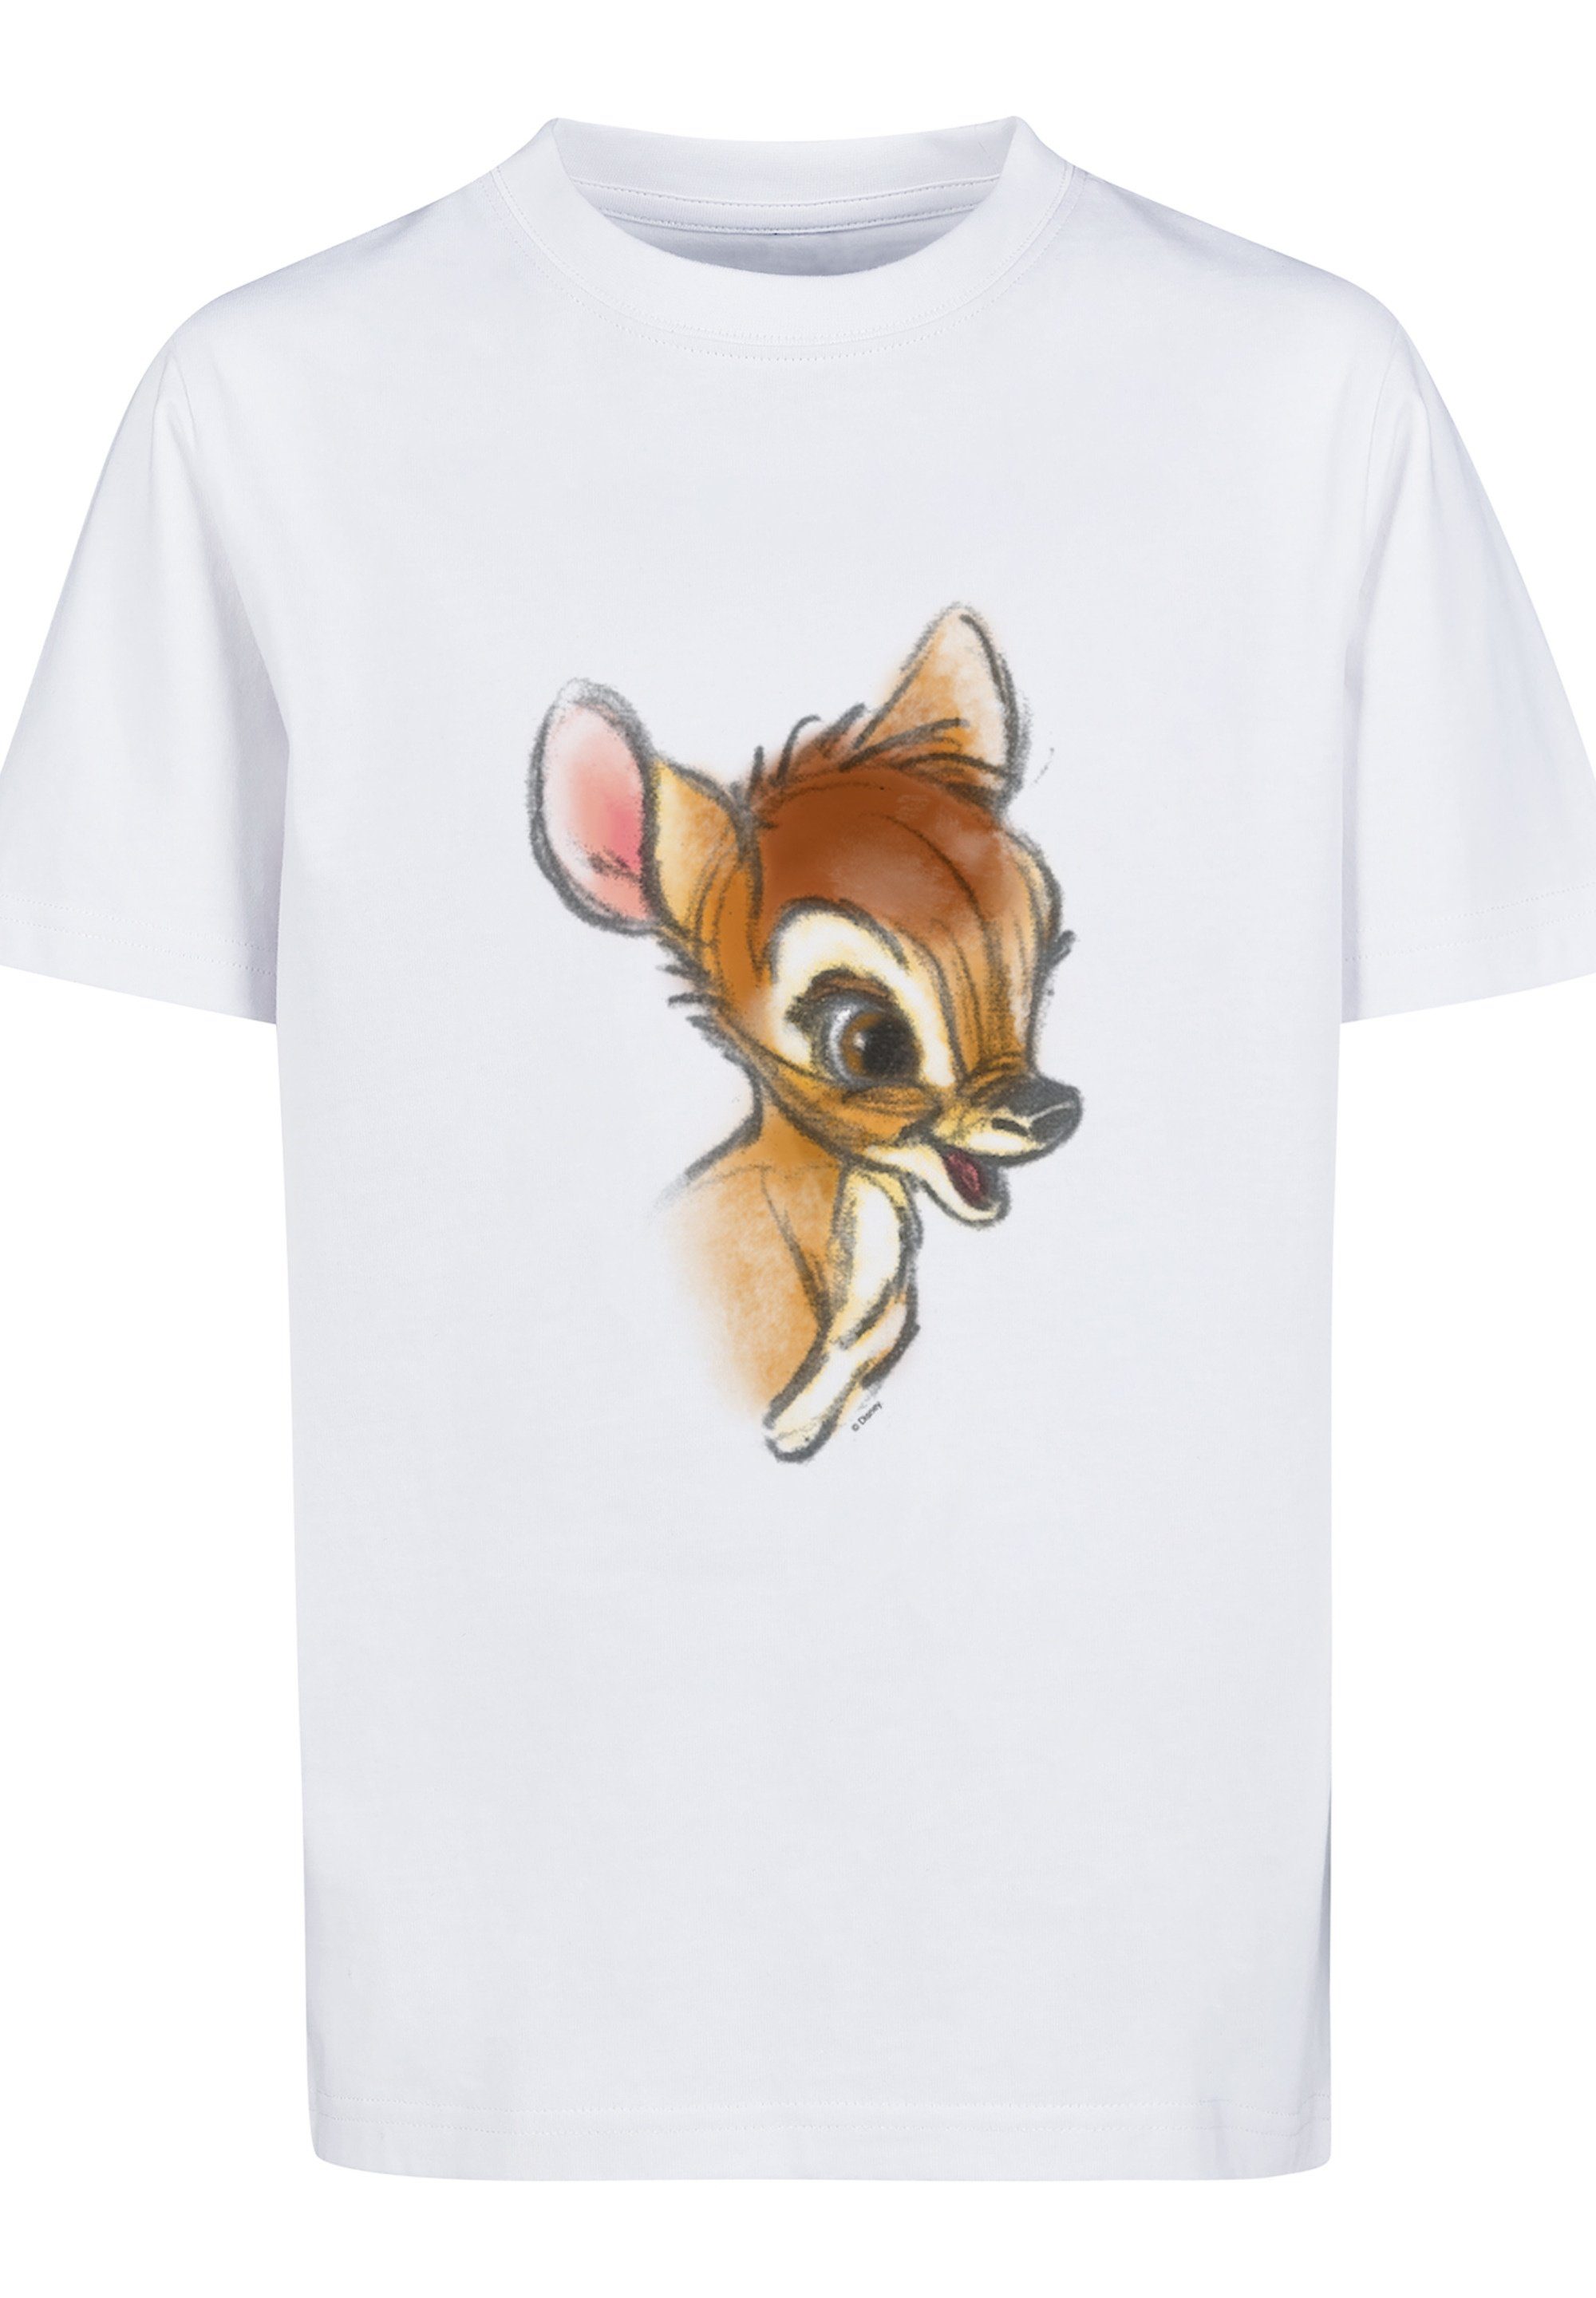 F4NT4STIC T-Shirt Disney Bambi Zeichnung Unisex Kinder,Premium Merch,Jungen, Mädchen,Bedruckt